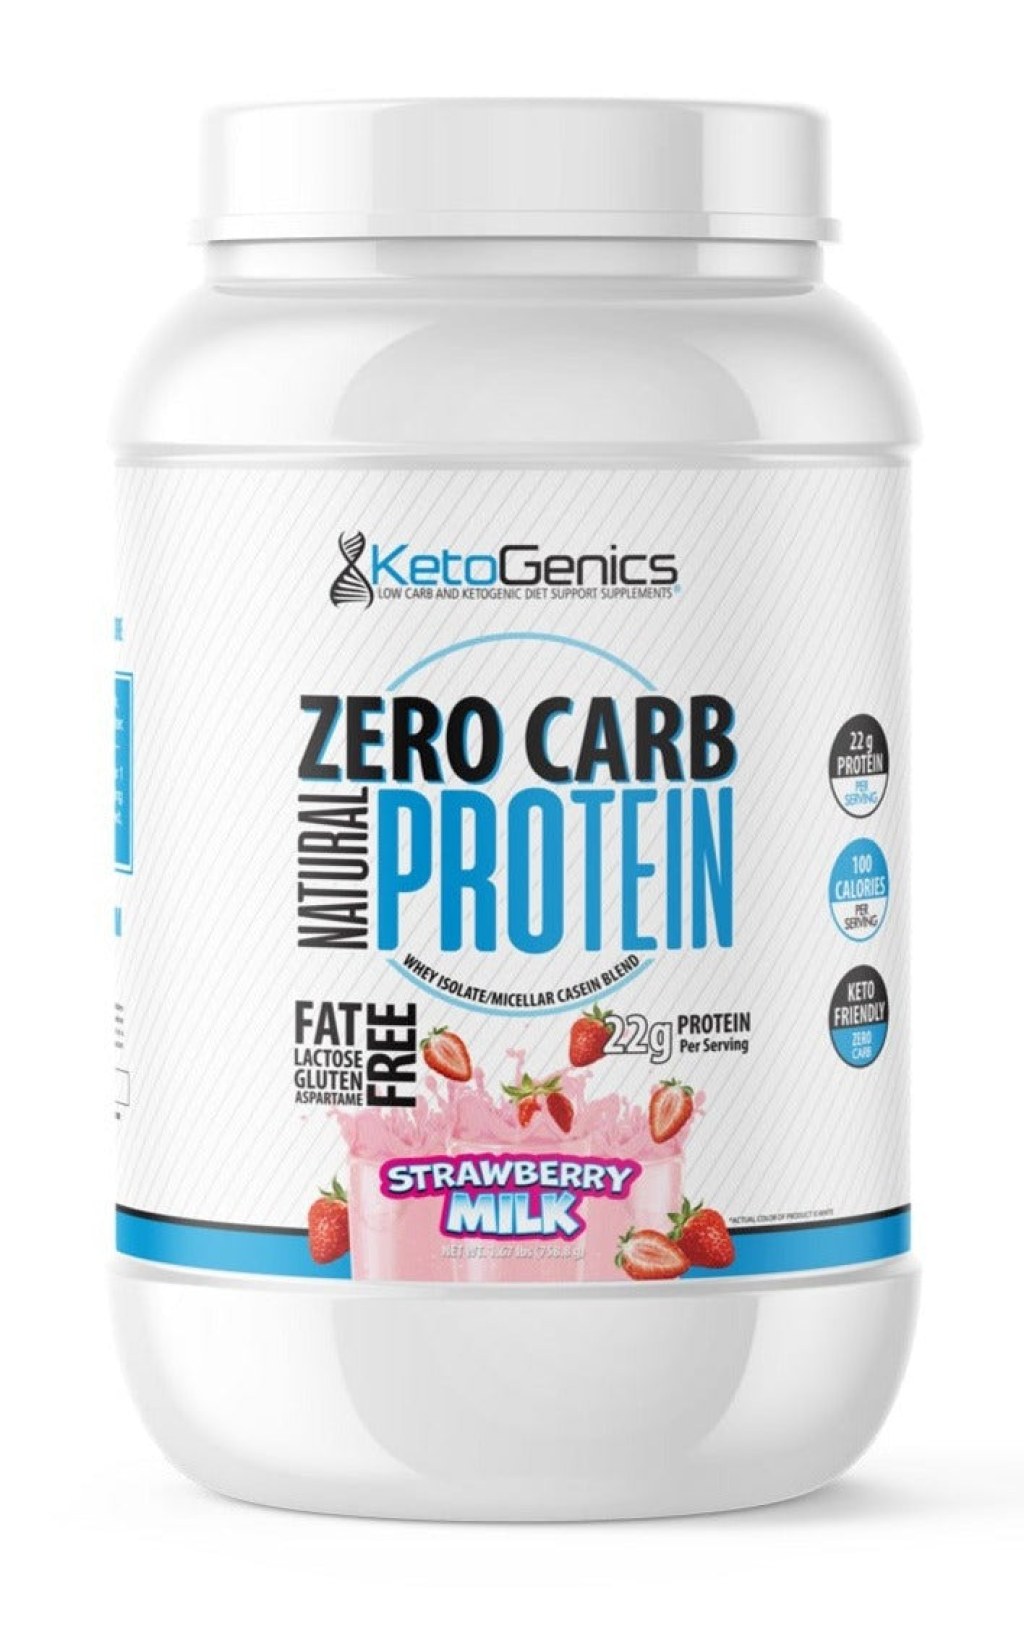 Picture of: Zero Carb, Zero Sugar Keto Protein Powder  KetoGenics